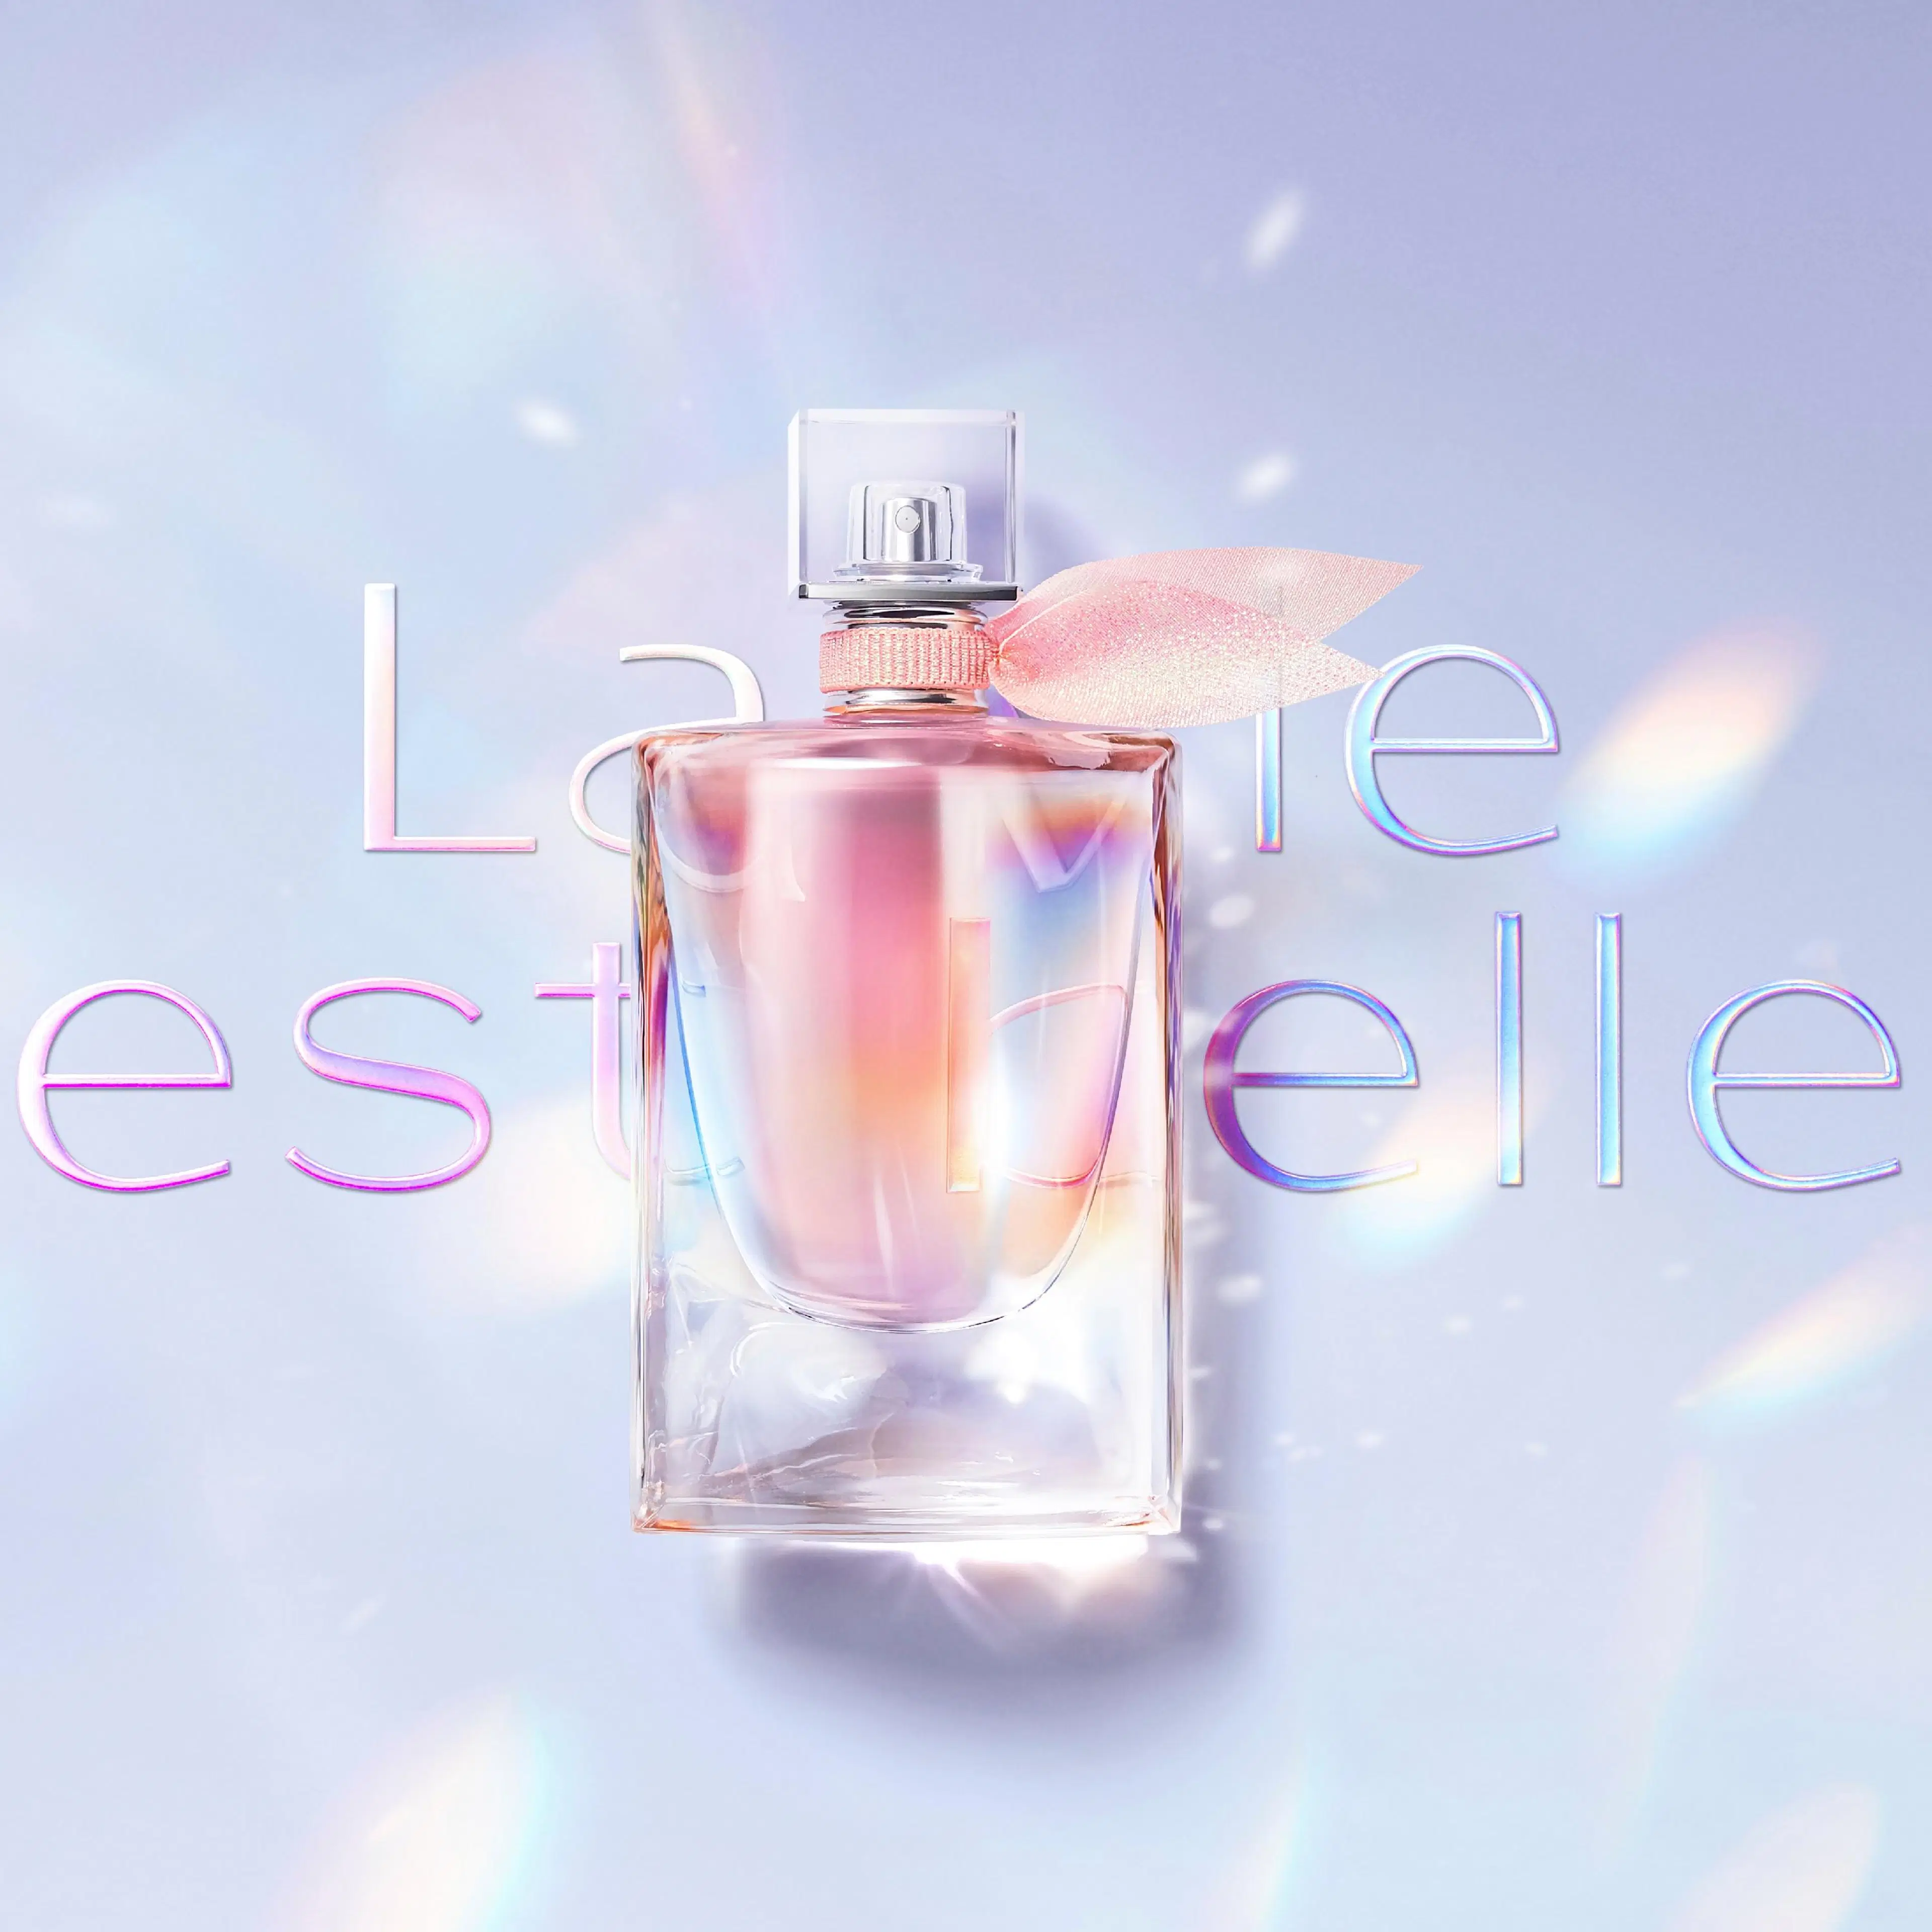 Lancôme La Vie est Belle Soleil Cristal EdP tuoksu 50 ml